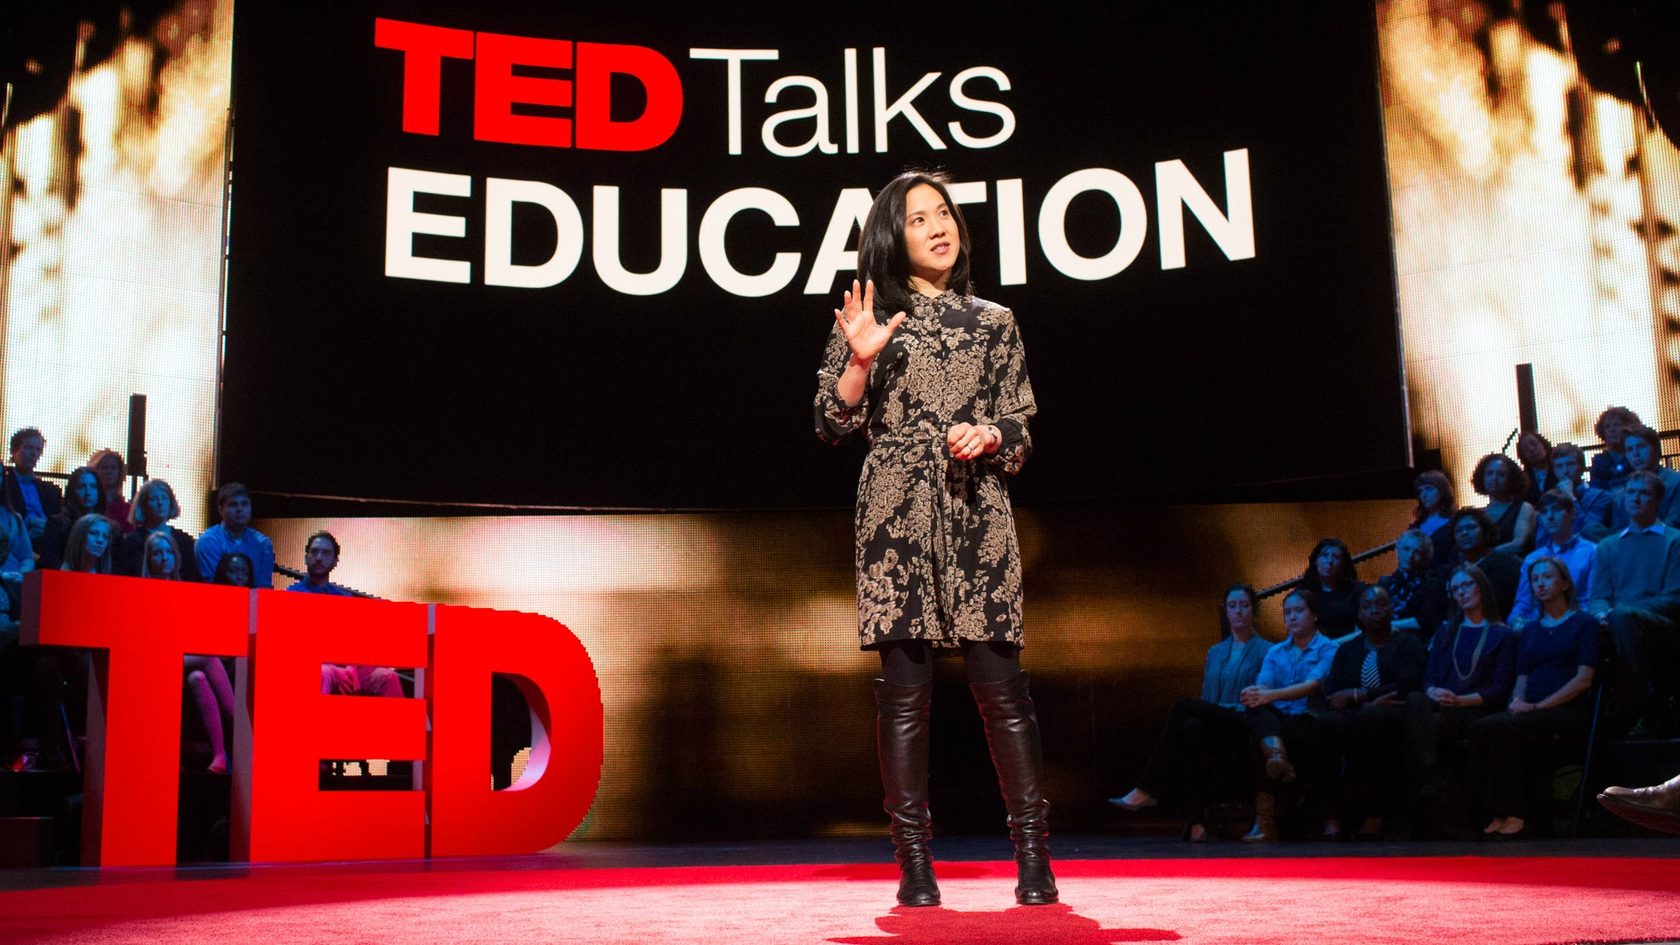 Двенадцать веселых докладов TED Talks на различные темы